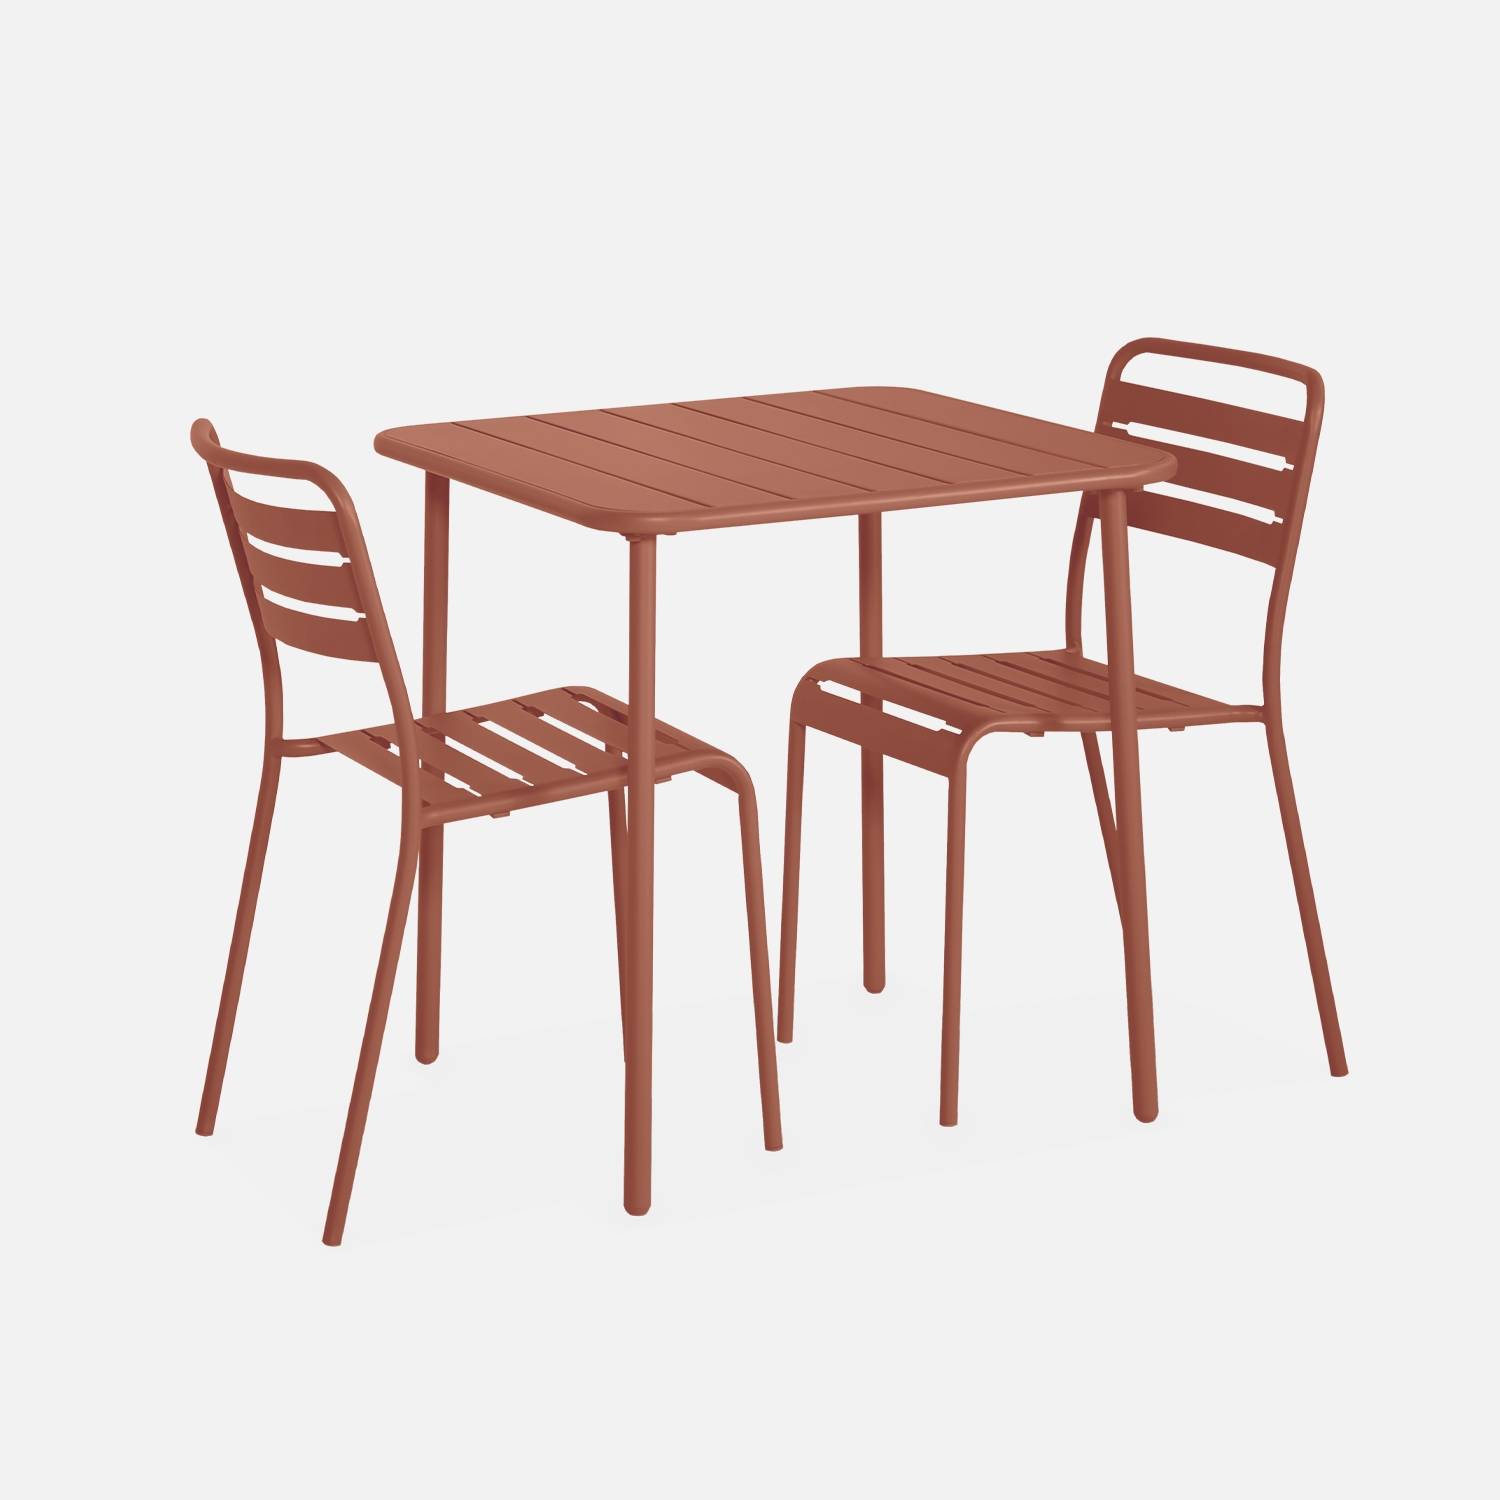 Metall-Gartentisch mit 2 Stühlen | sweeek